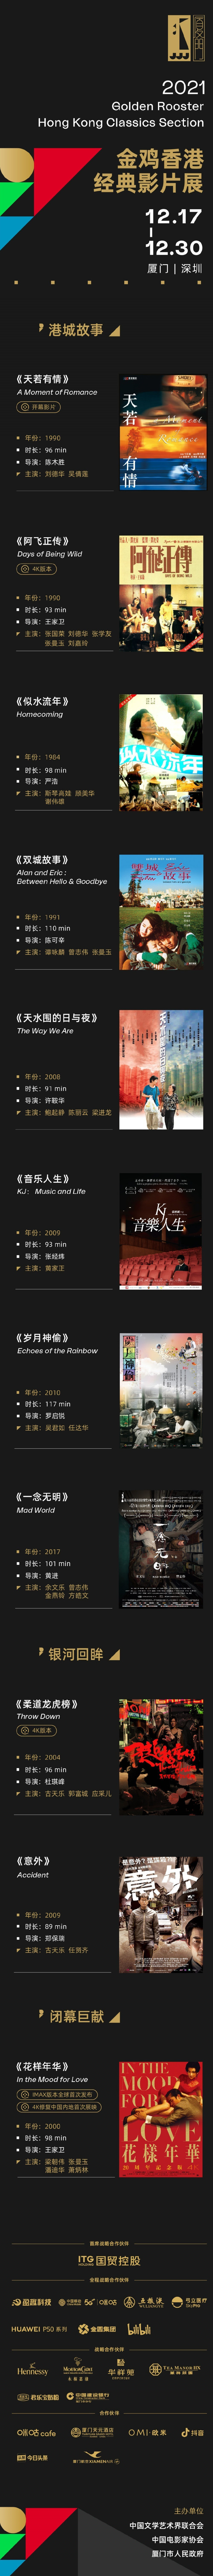 2021金鸡香港经典影片展片单公布 IMAX版《花样年华》亮相